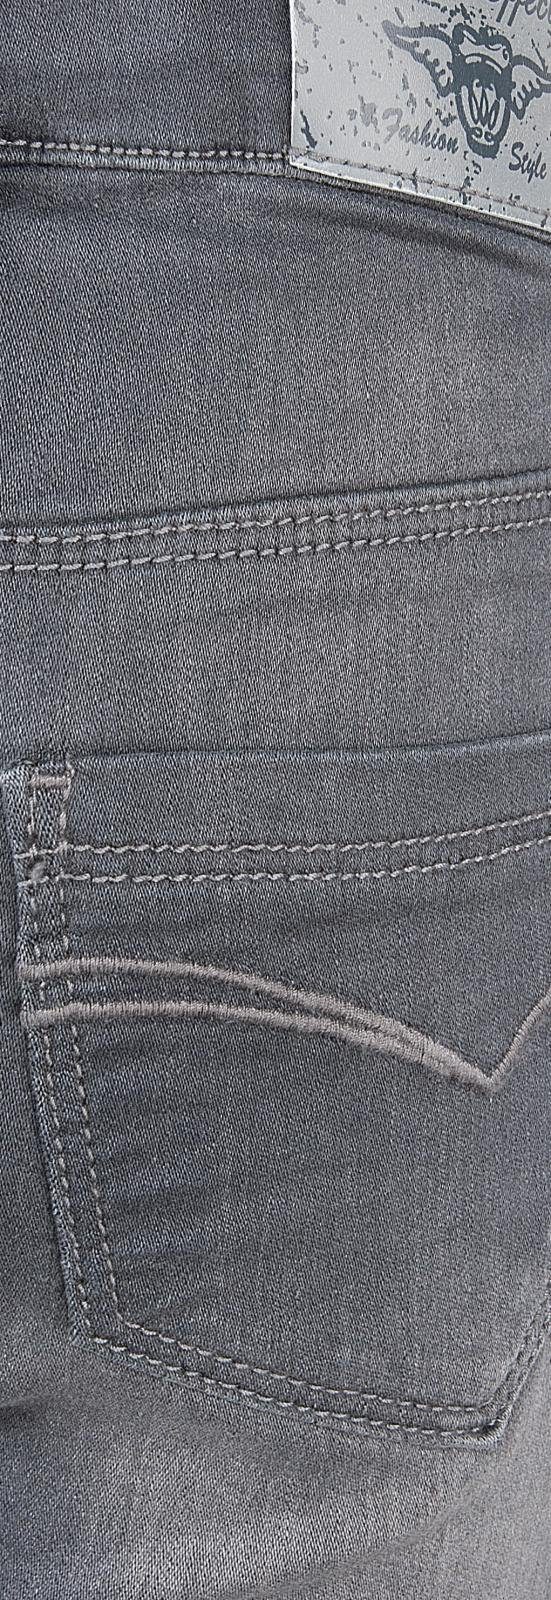 BLUE EFFECT Regular-fit-Jeans Jeans Hose ultra grey stretch regular Skinny dark